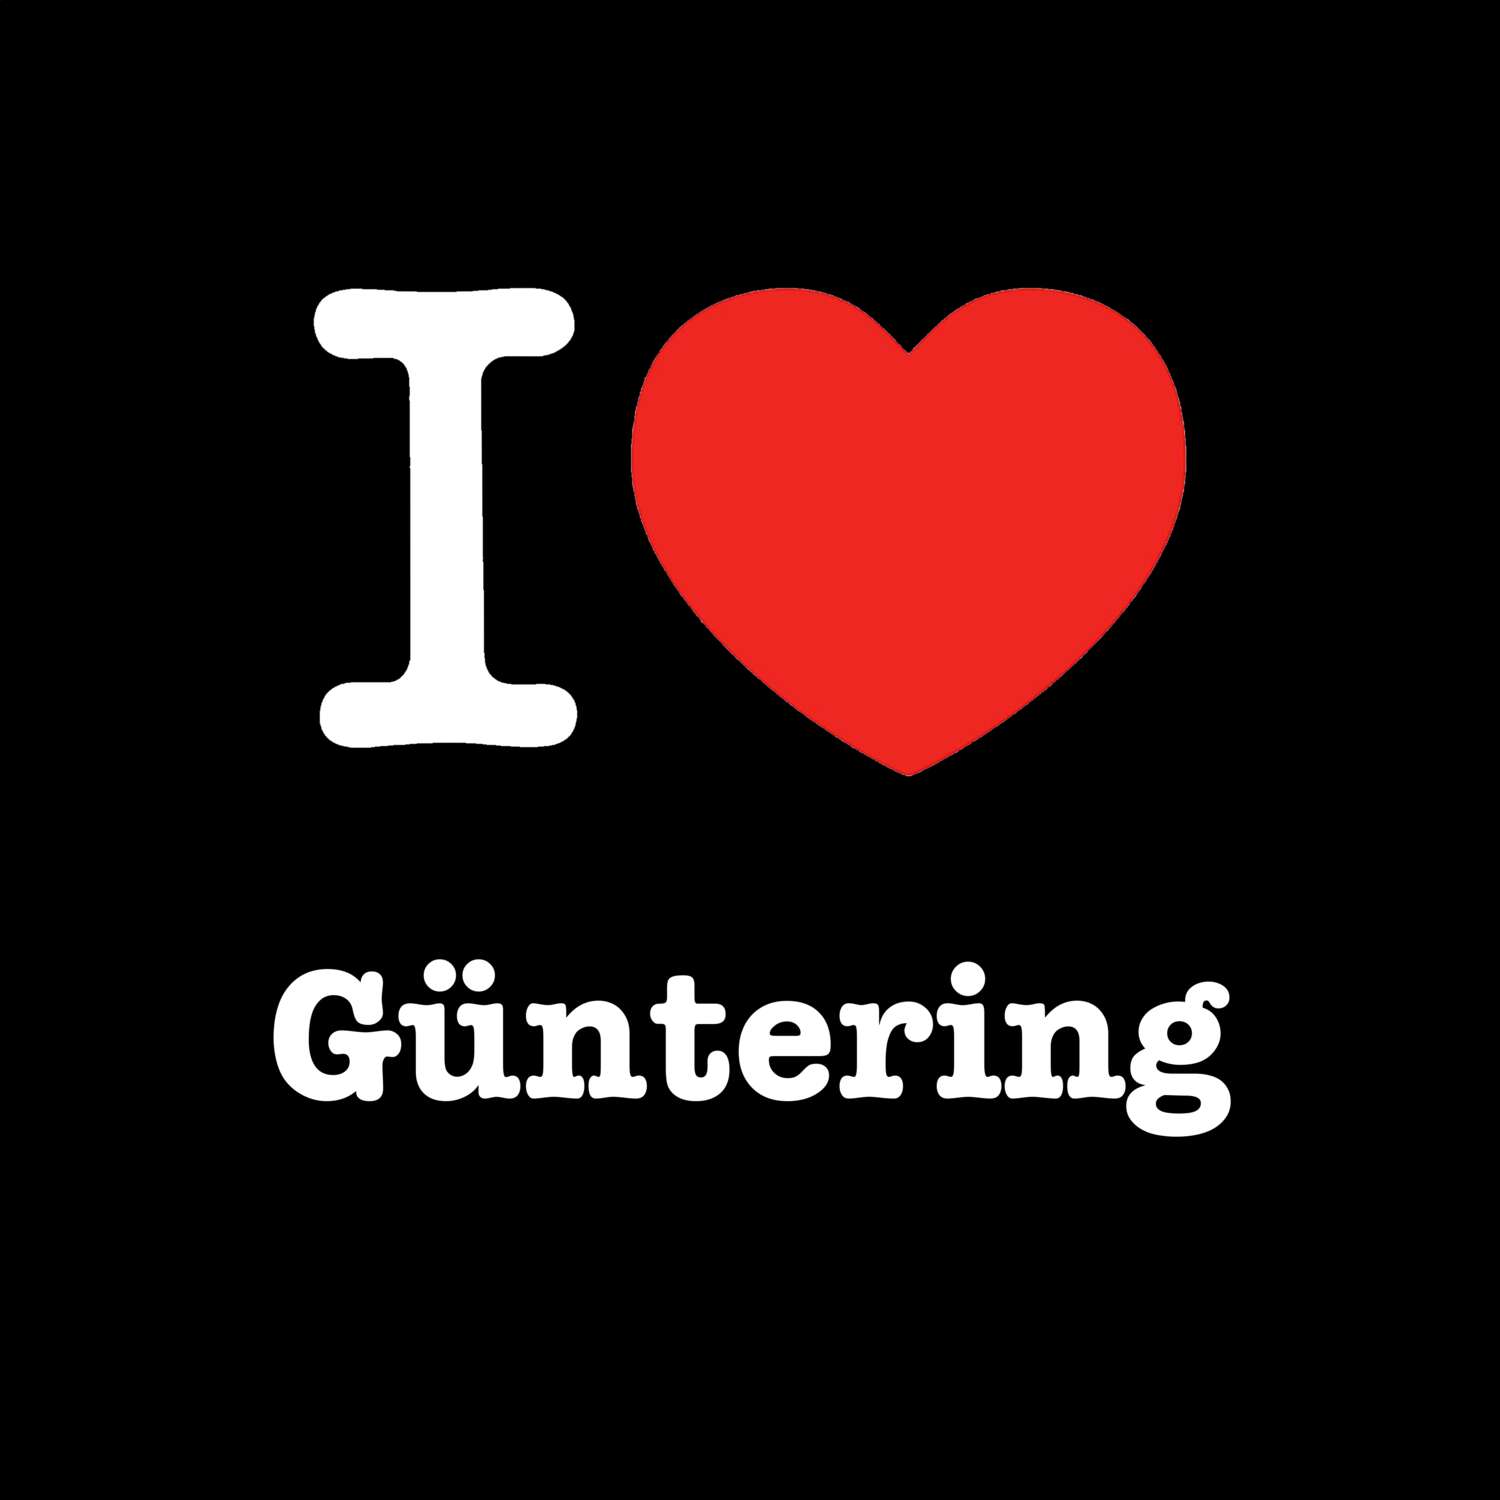 Güntering T-Shirt »I love«